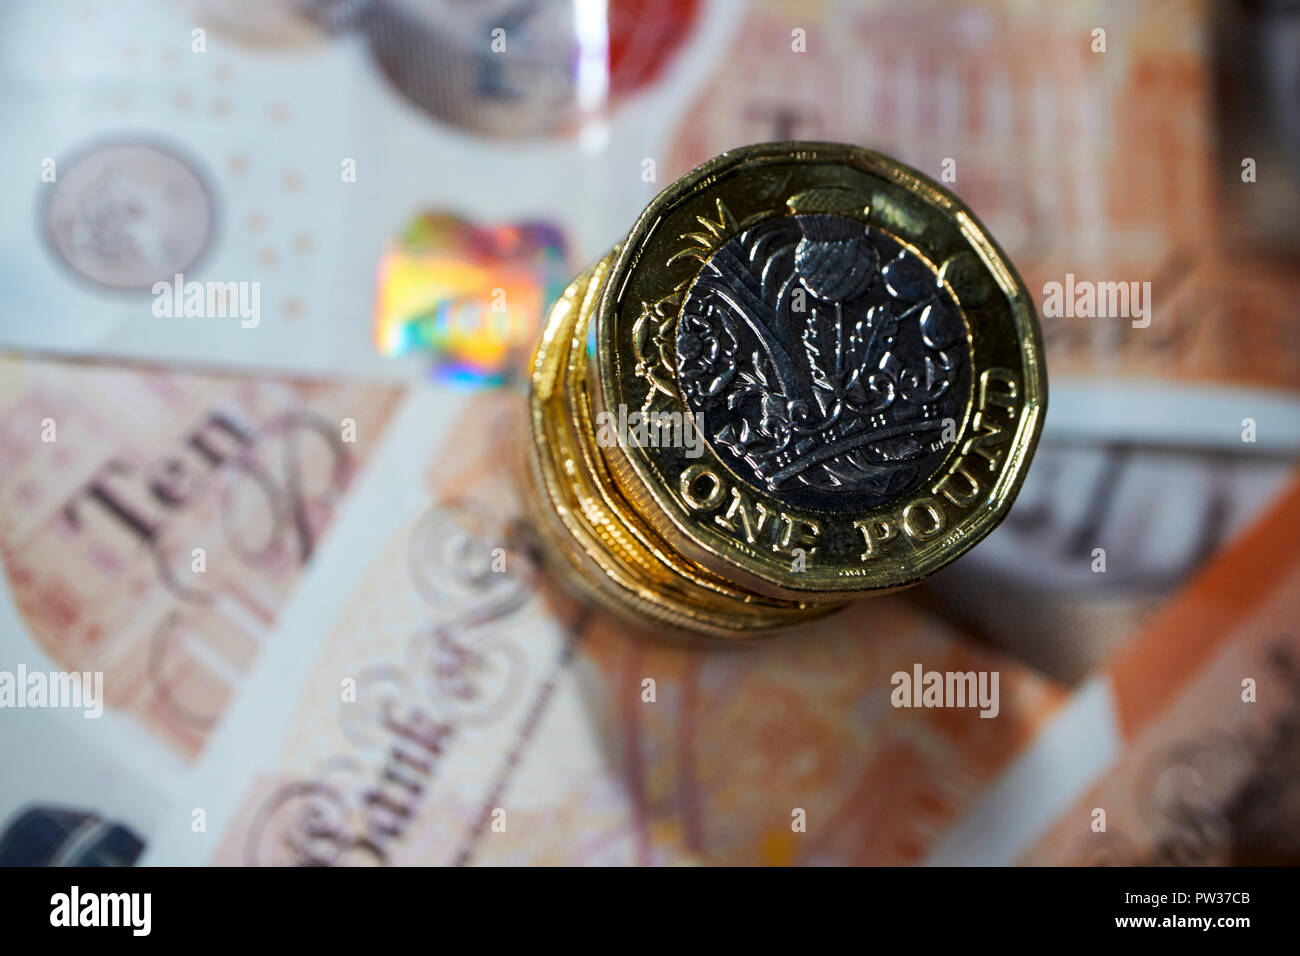 pile of pound coins on plastic ten pound notes Stock Photo